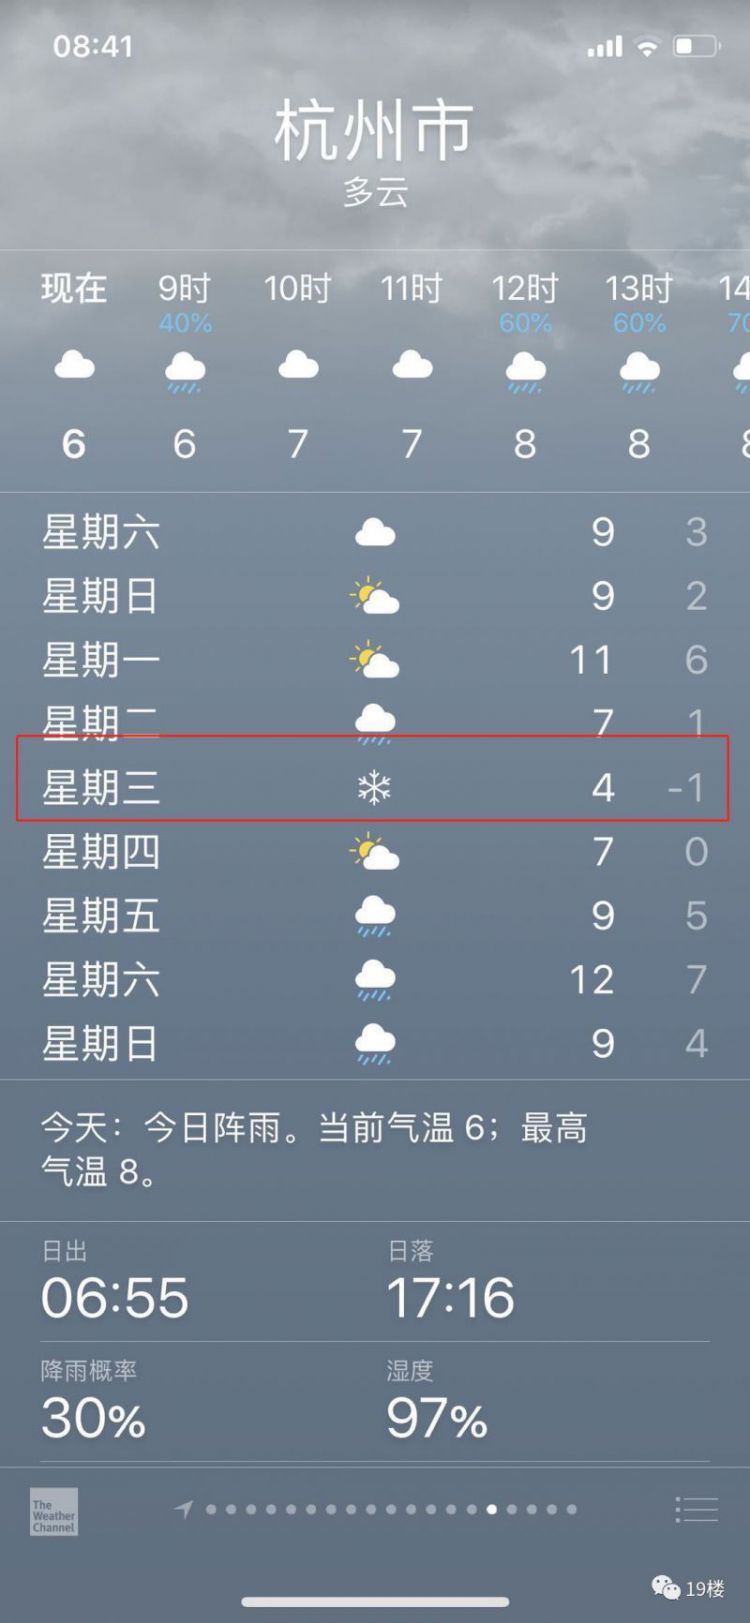 雨都杭州，我服你了呦！下周更心塞的来了……